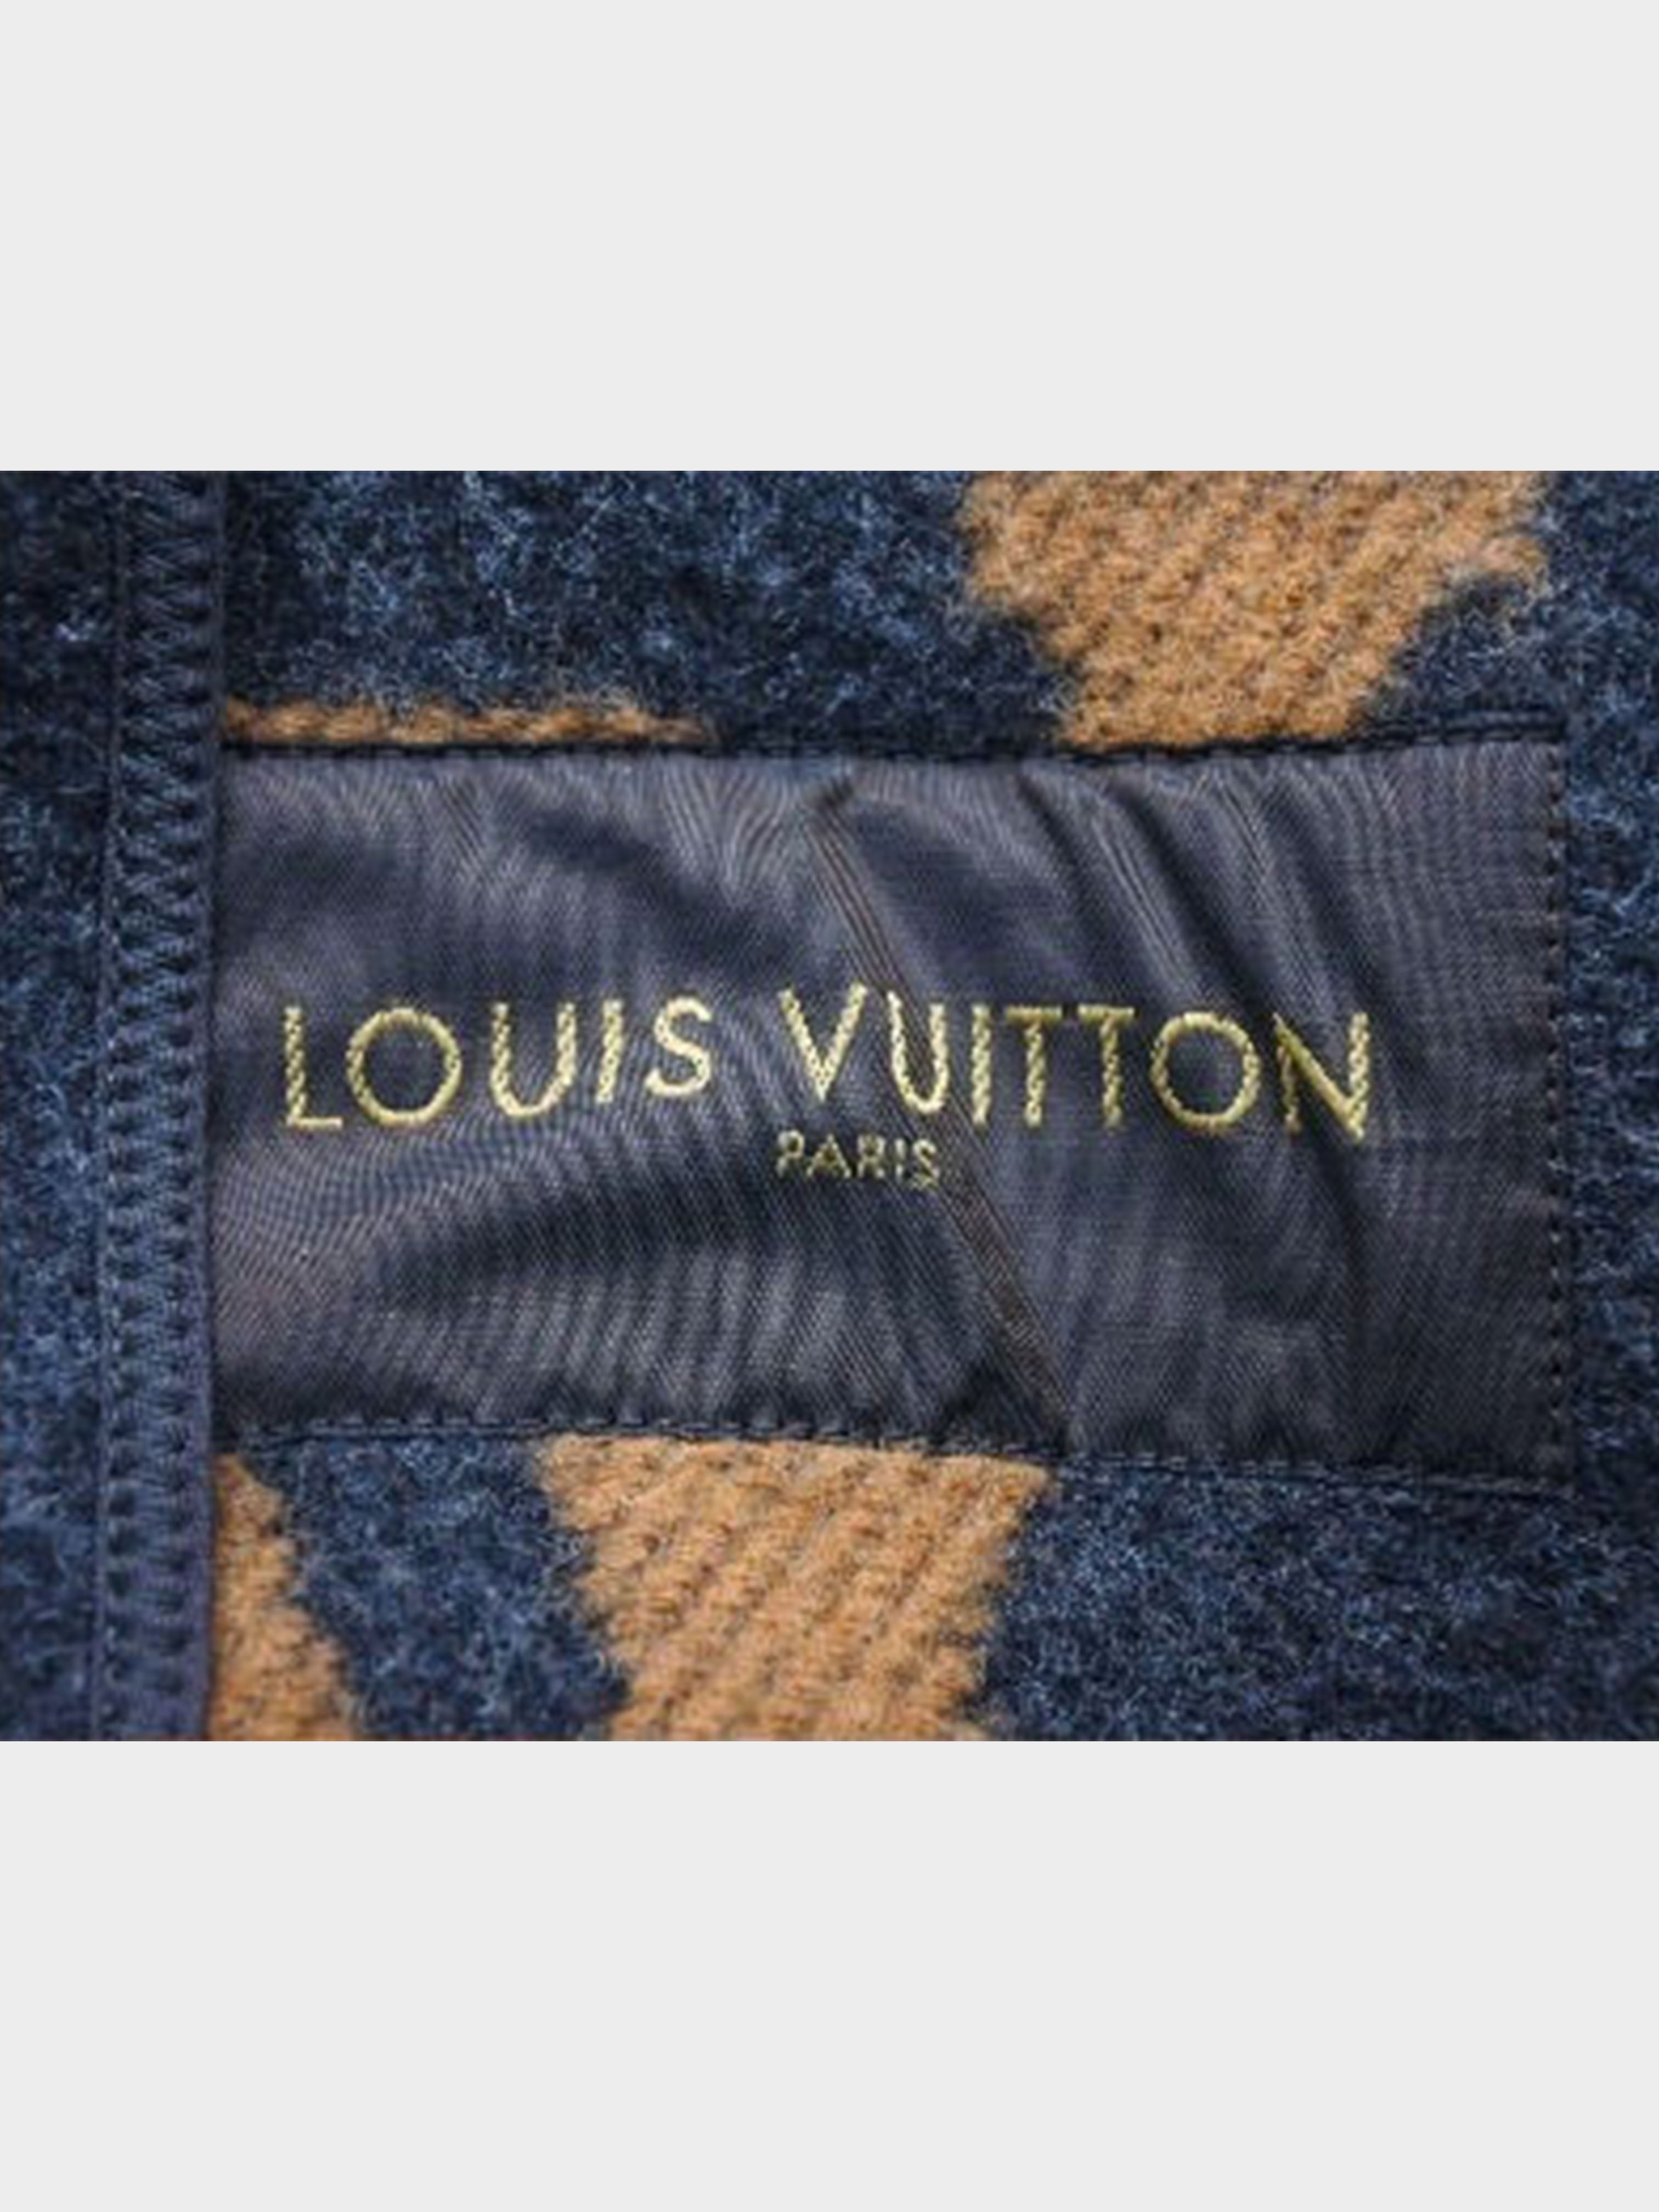 Louis Vuitton FW 2012 Wool Bomber Jacket